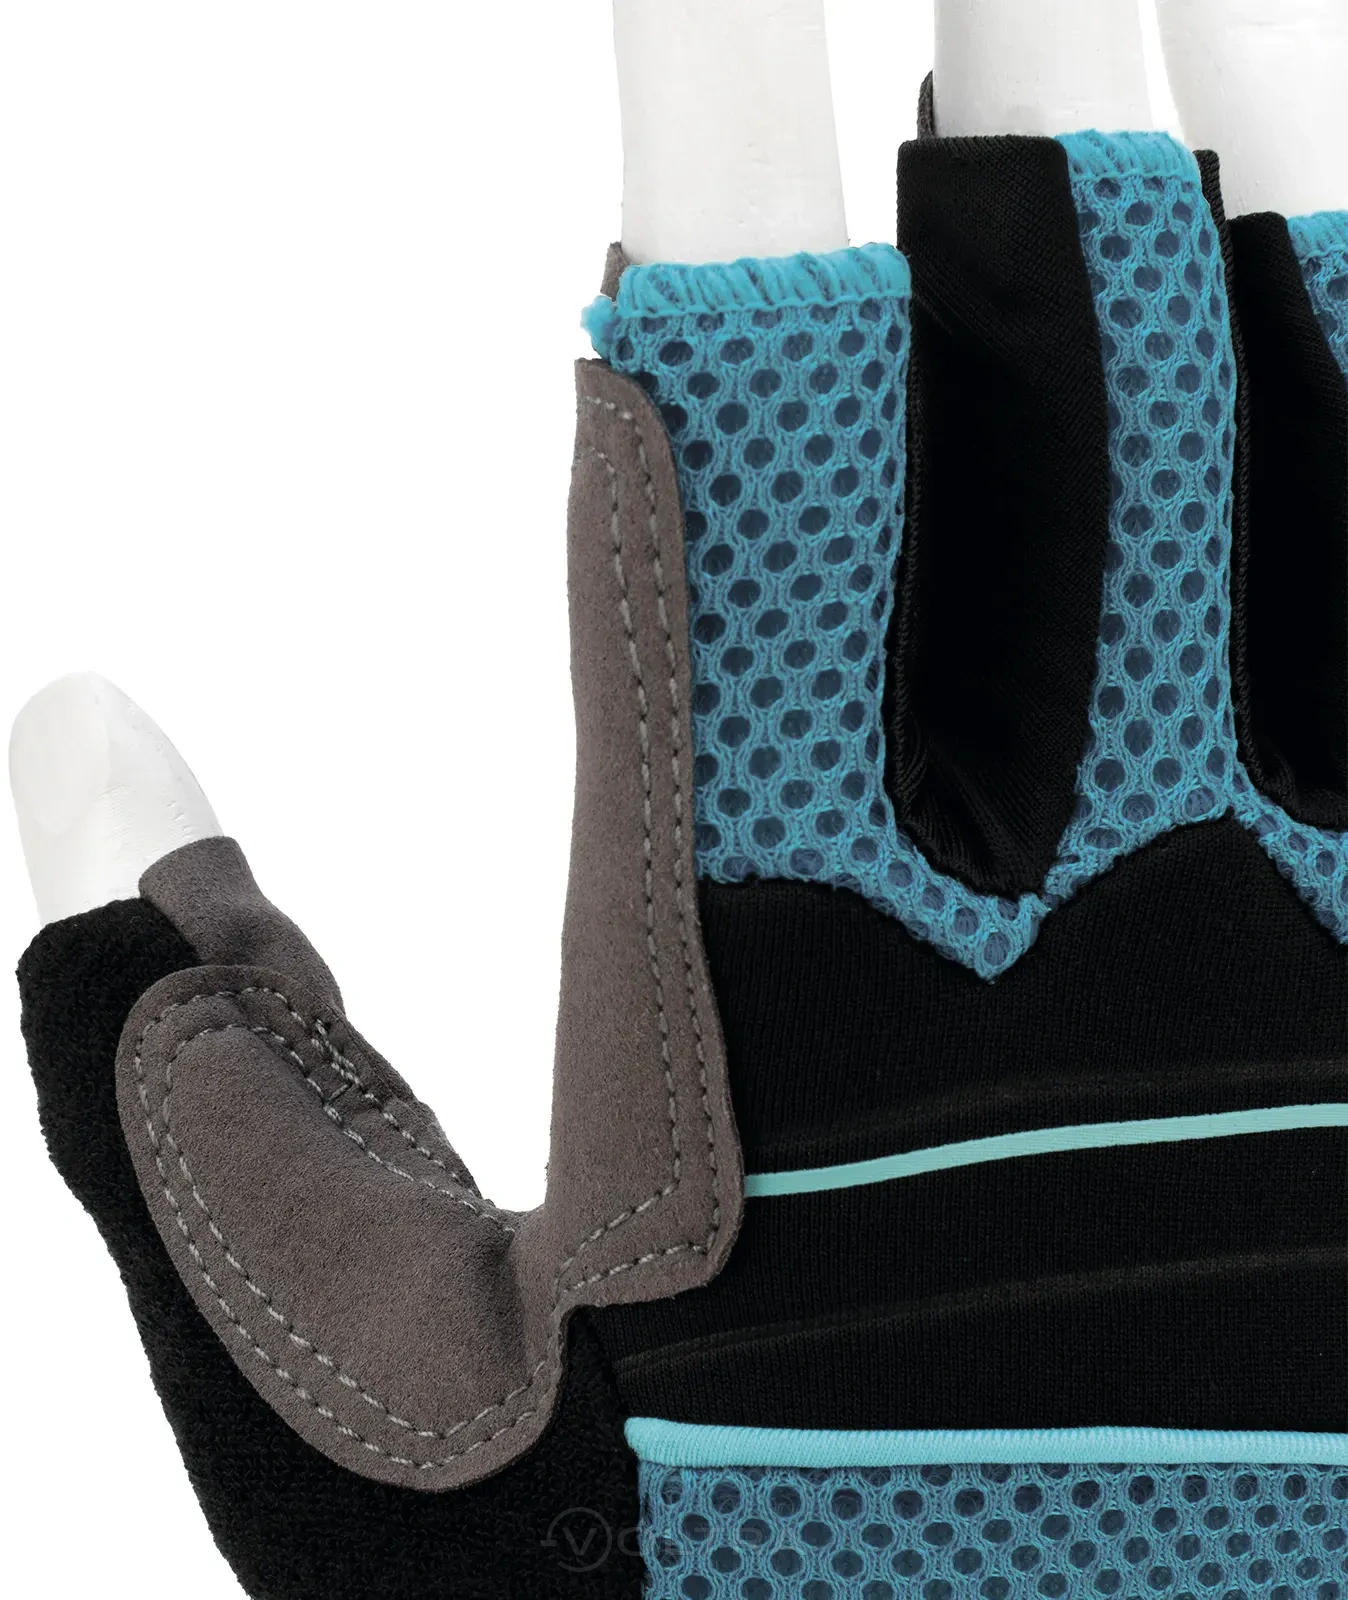 Перчатки комбинированные облегченные открытые пальцы AKTIV размер XL (10) Gross (90310)